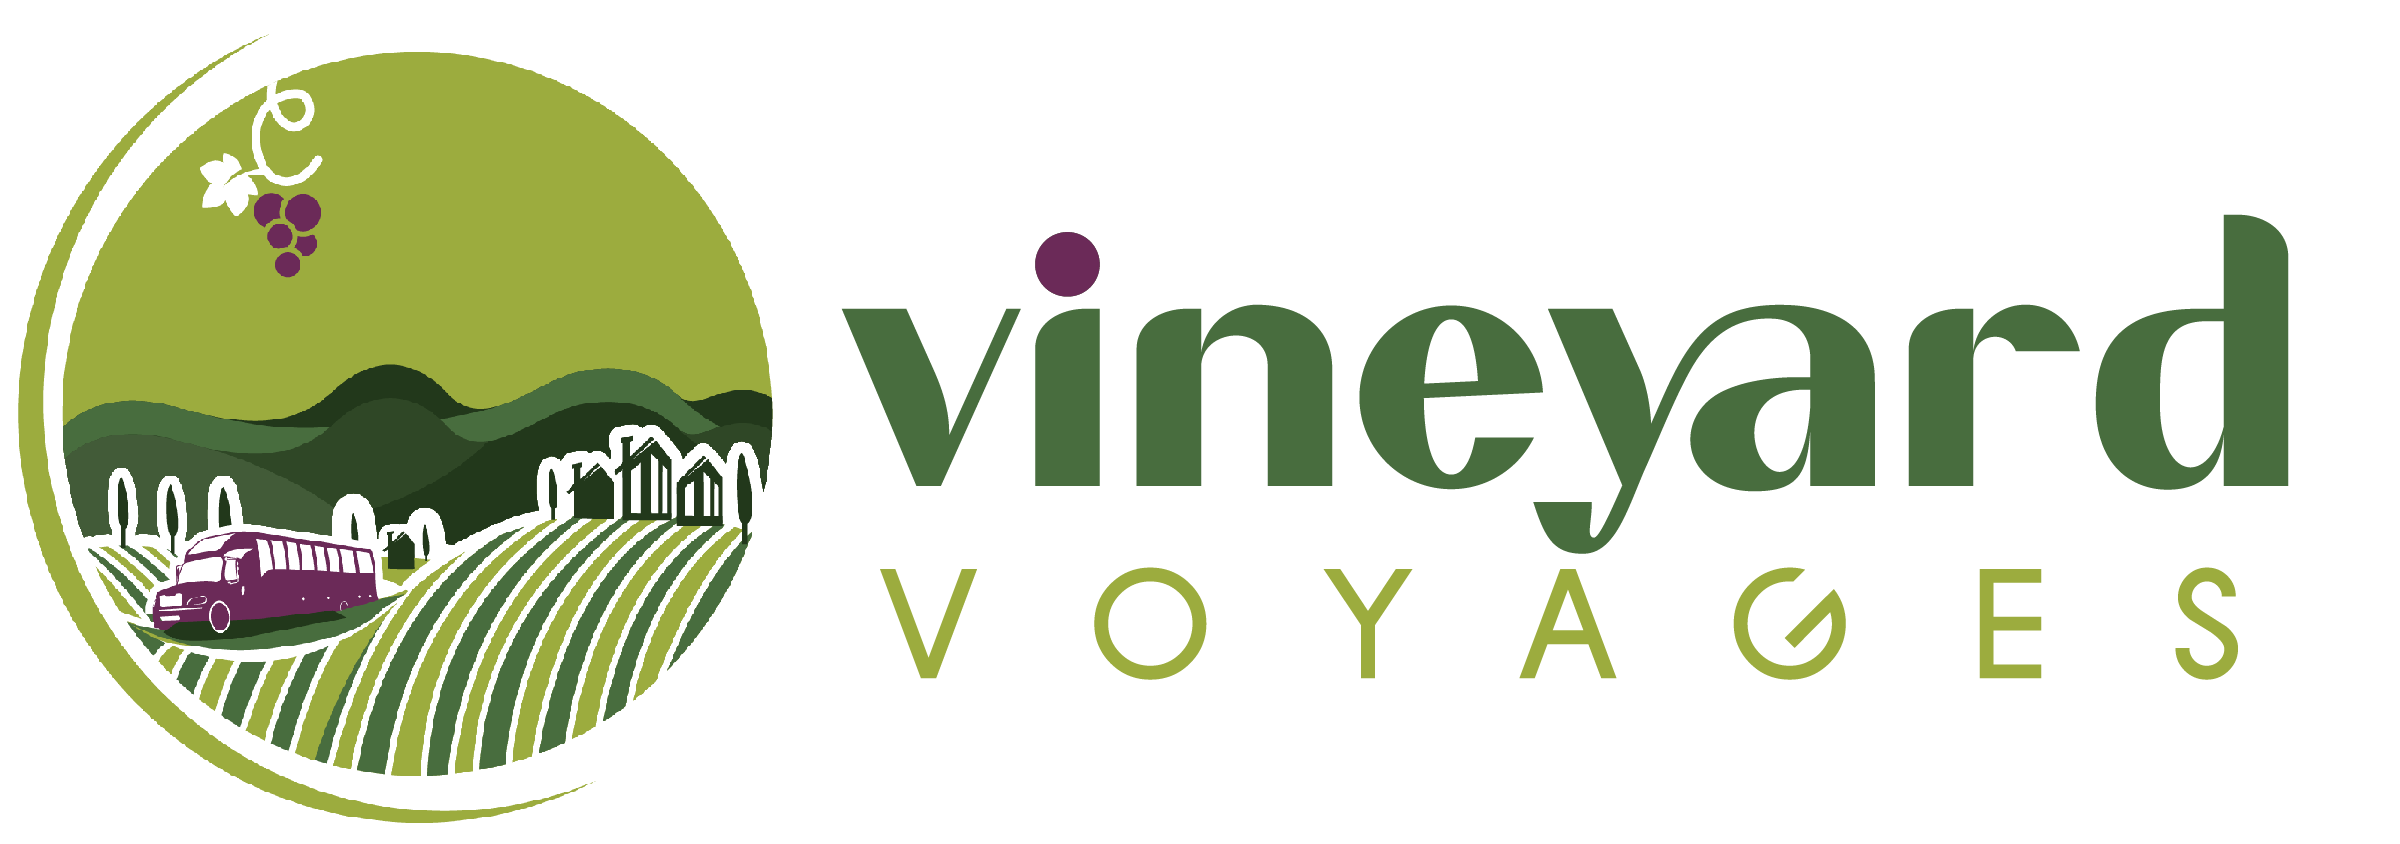 Vineyard Voyages